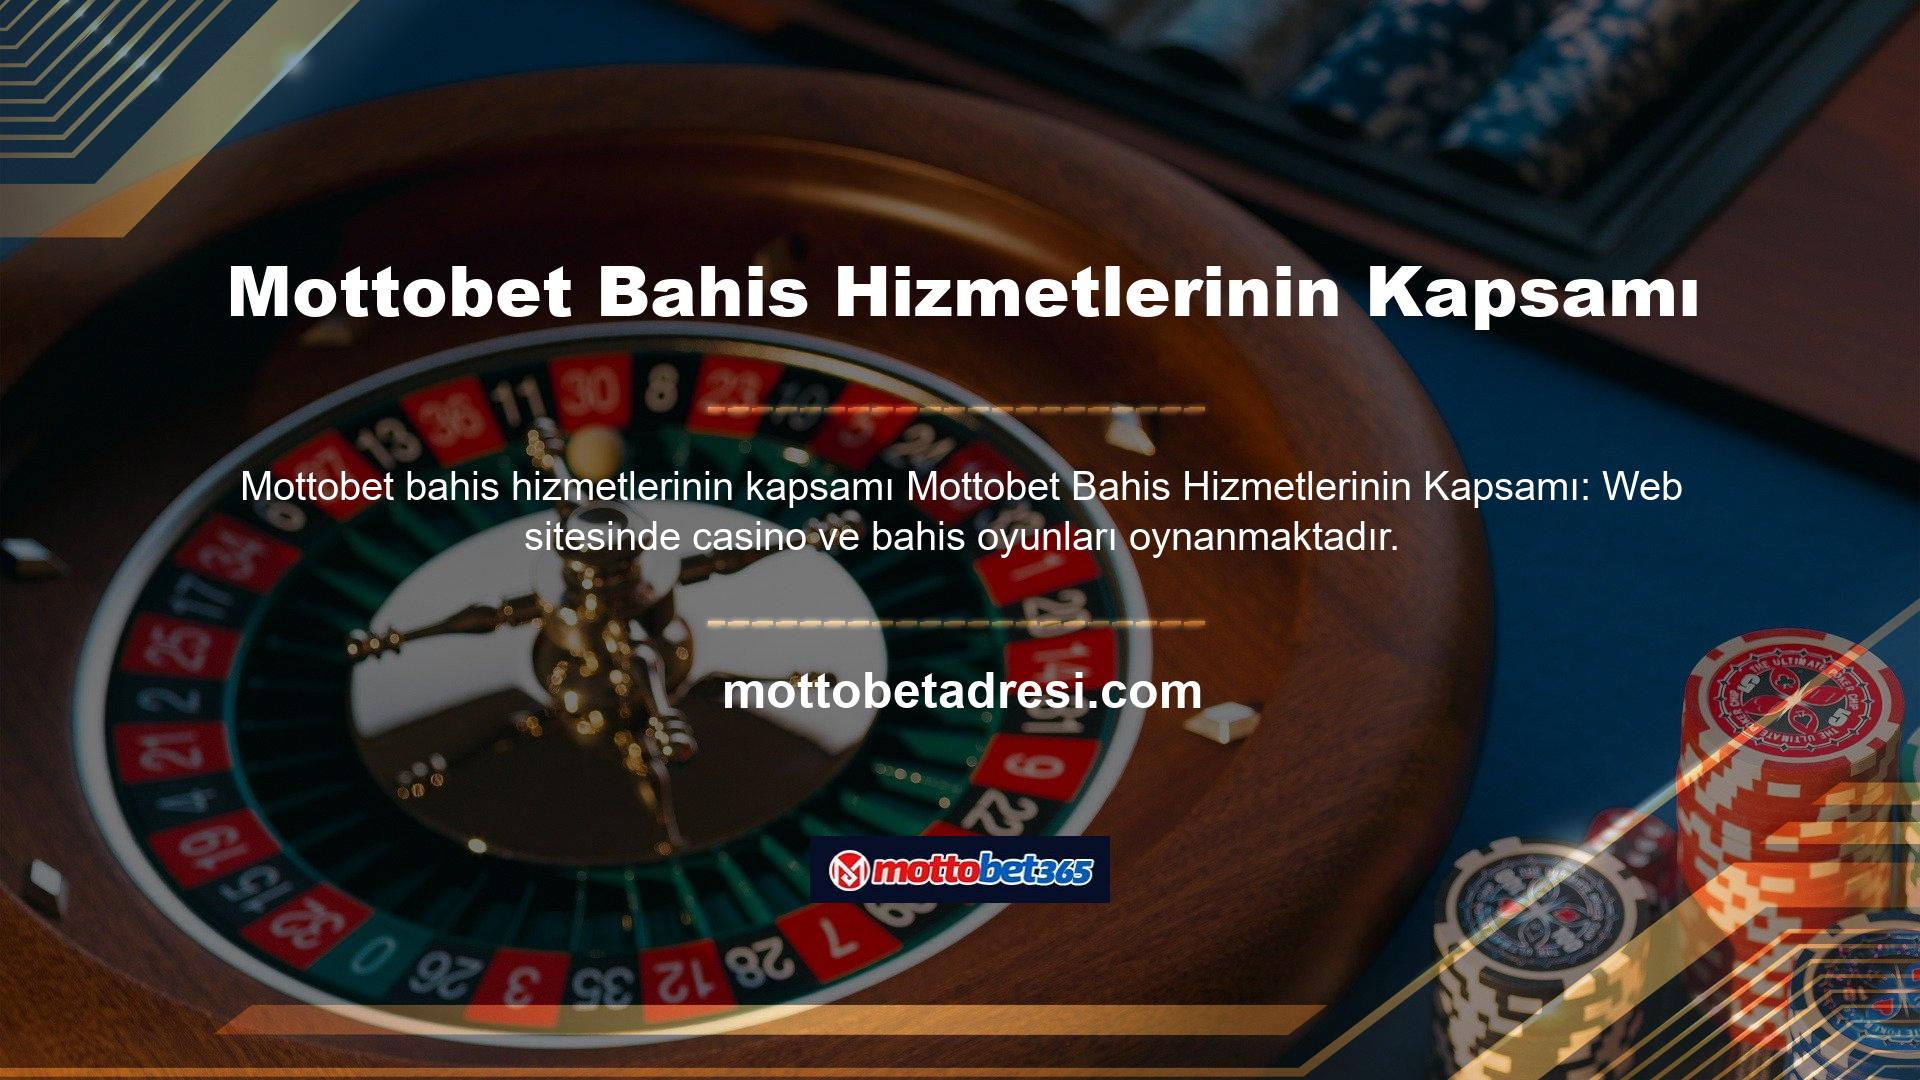 Casino başlığı altında slot makineleri, Black Jack, bakara, rulet, poker ve daha fazlasını içeren çeşitli popüler oyun hizmetleri sunulmaktadır